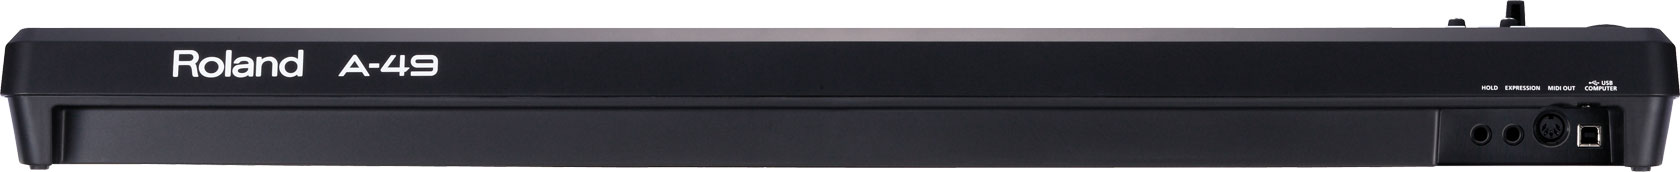 公式通販ショップ Roland A-49 MIDI KEYBOARD CONTOLLER 黒 DTM/DAW